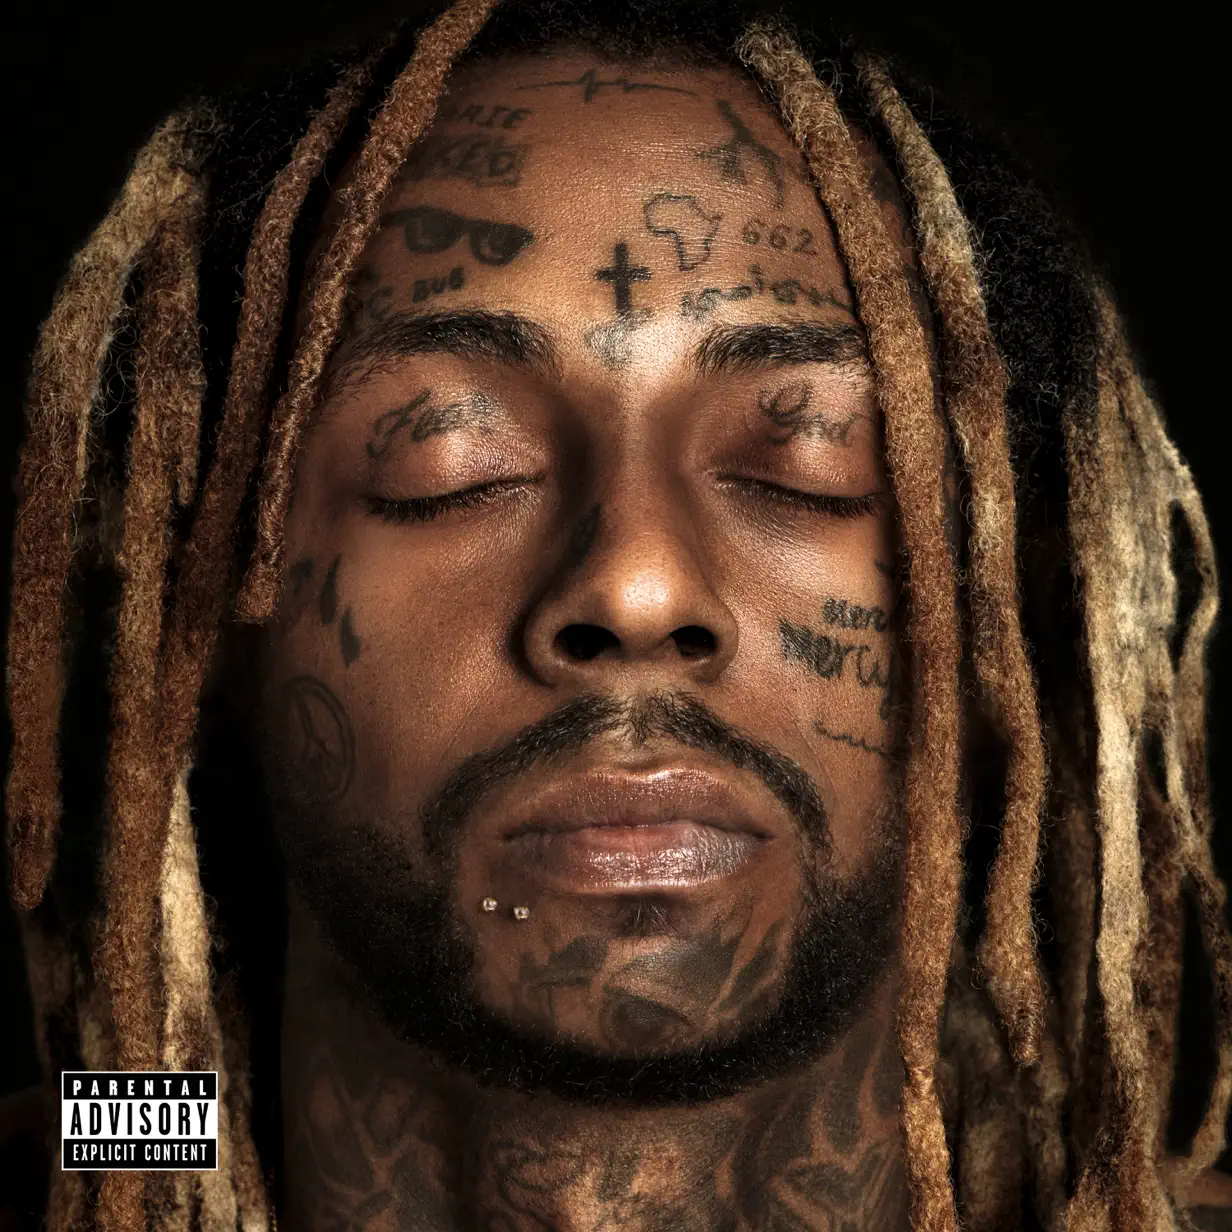 Lil Wayne & 2 Chainz’s “Welcome 2 Collegrove” Album Download Leak MP3 ZIP Files